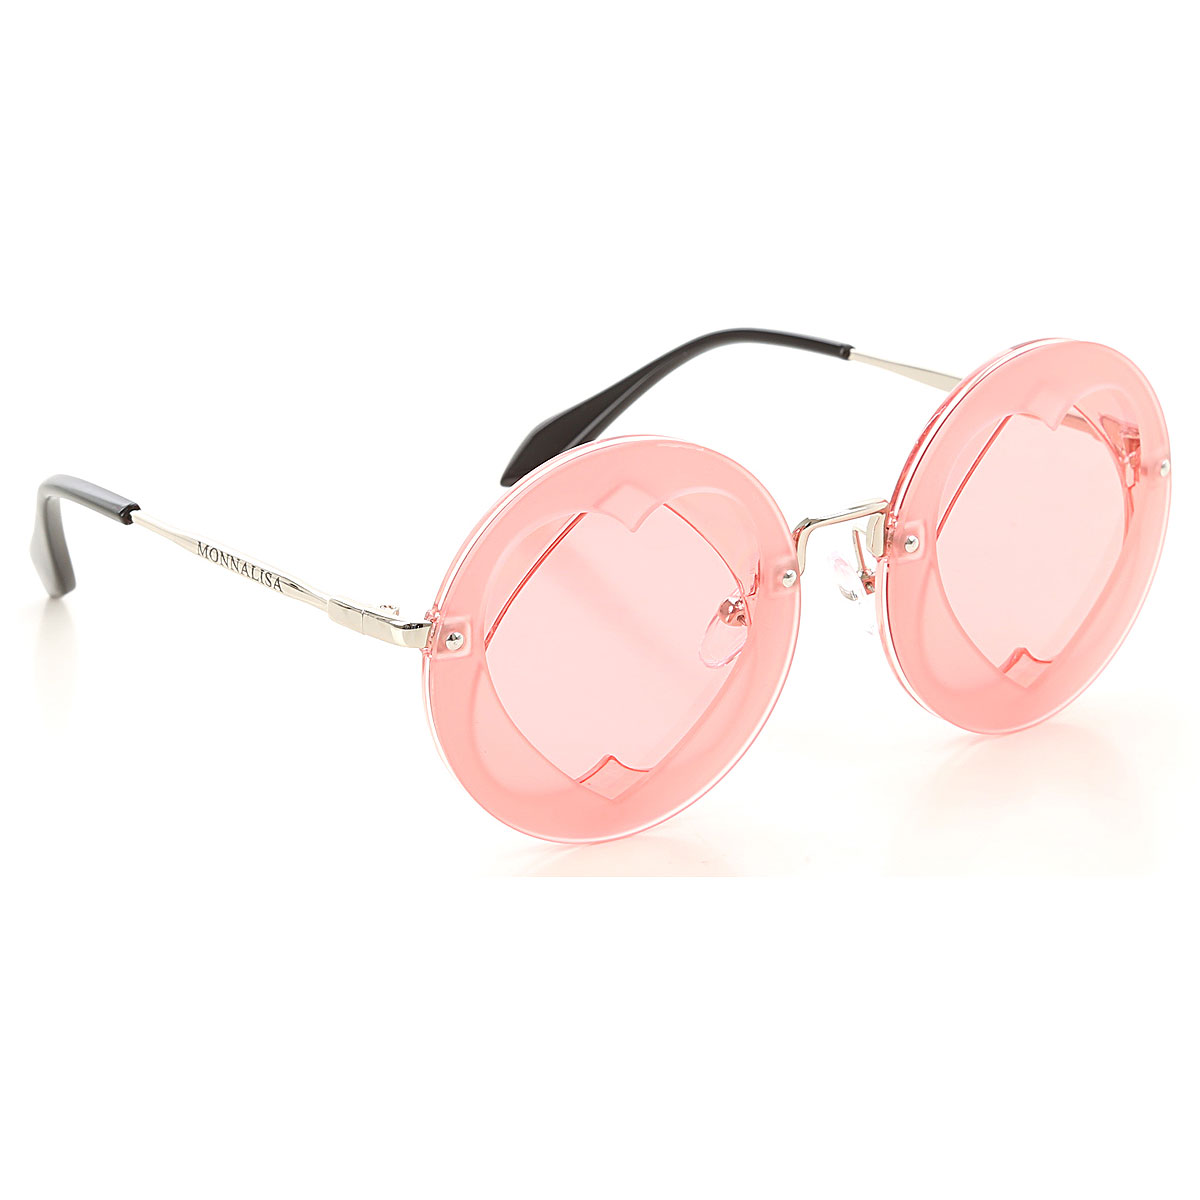 Monnalisa Kinder Sonnenbrille für Mädchen Günstig im Sale, Pink, Plastik, 2017